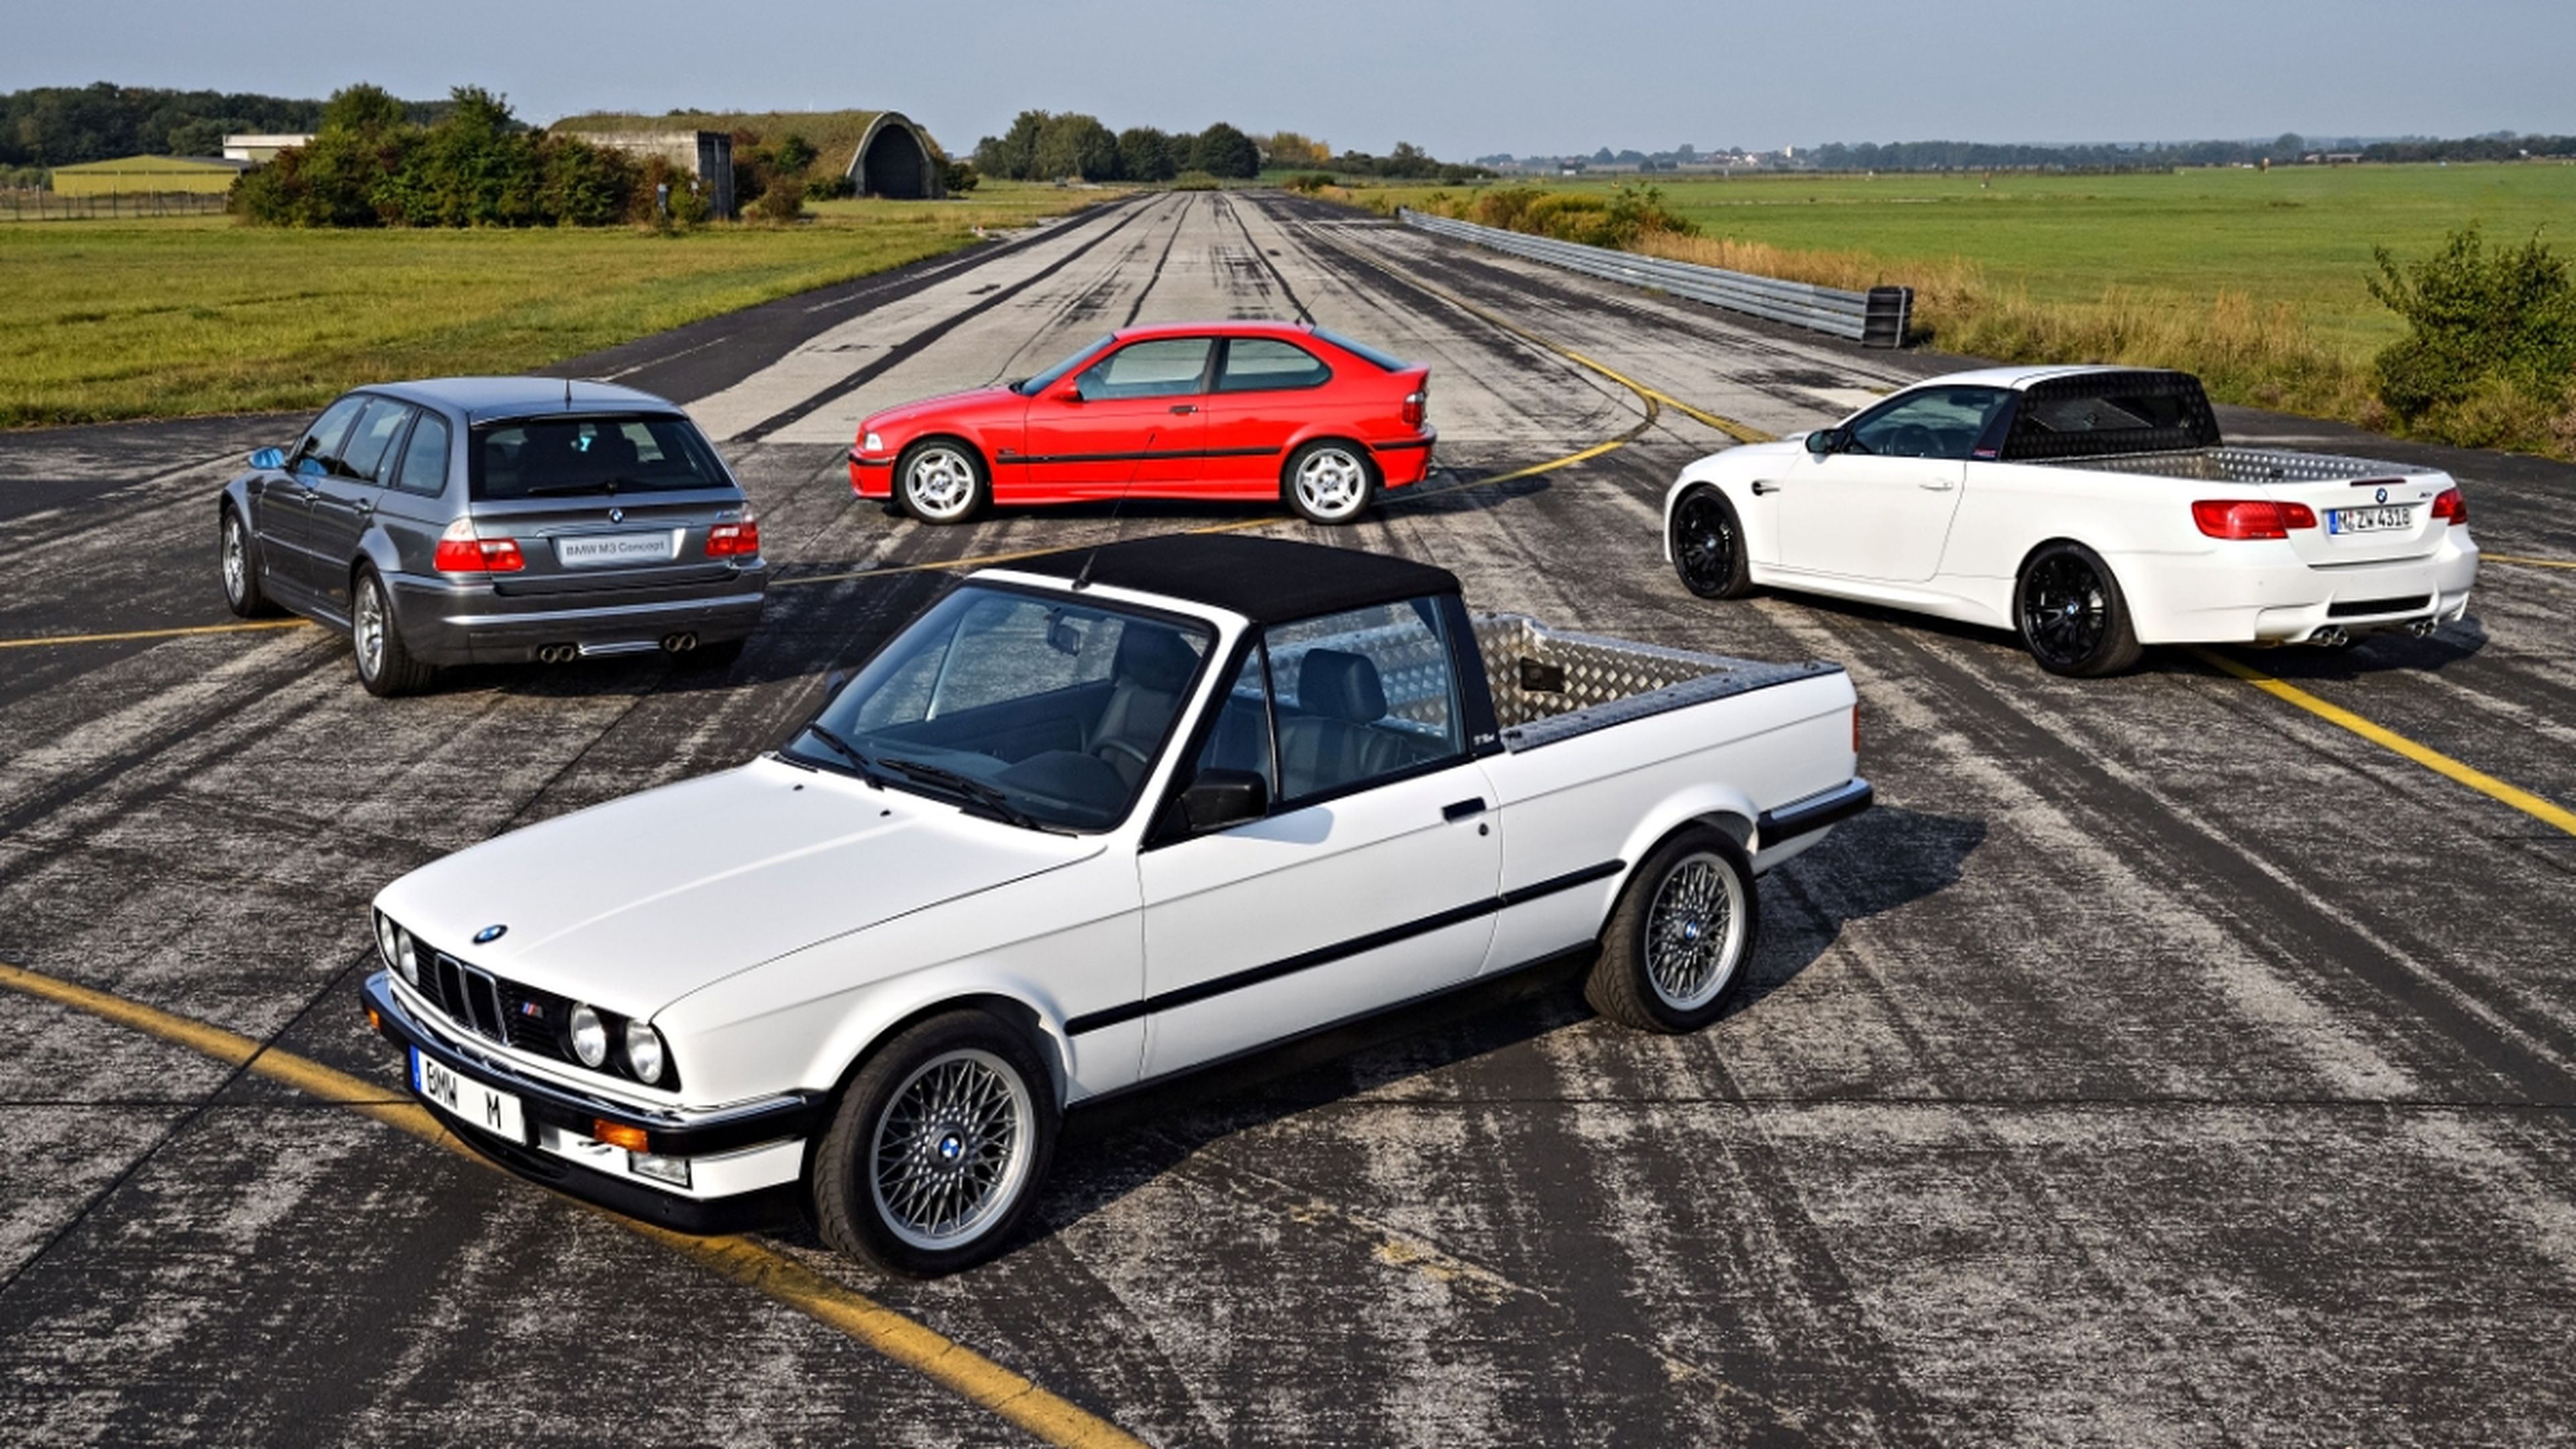 Te imaginas que hubiera un nuevo BMW Serie 3 Compact?